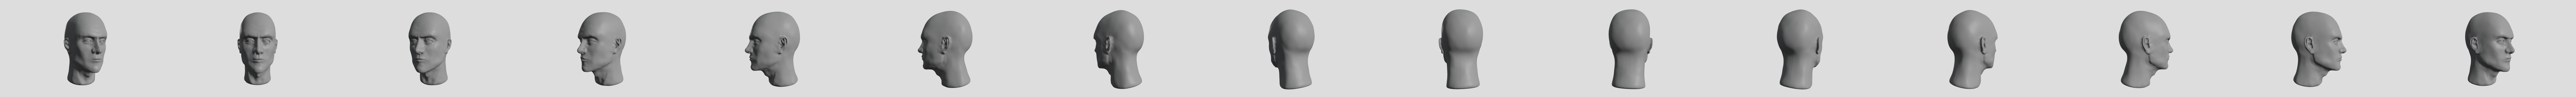 Male Head Sculpt 01 | 3D model